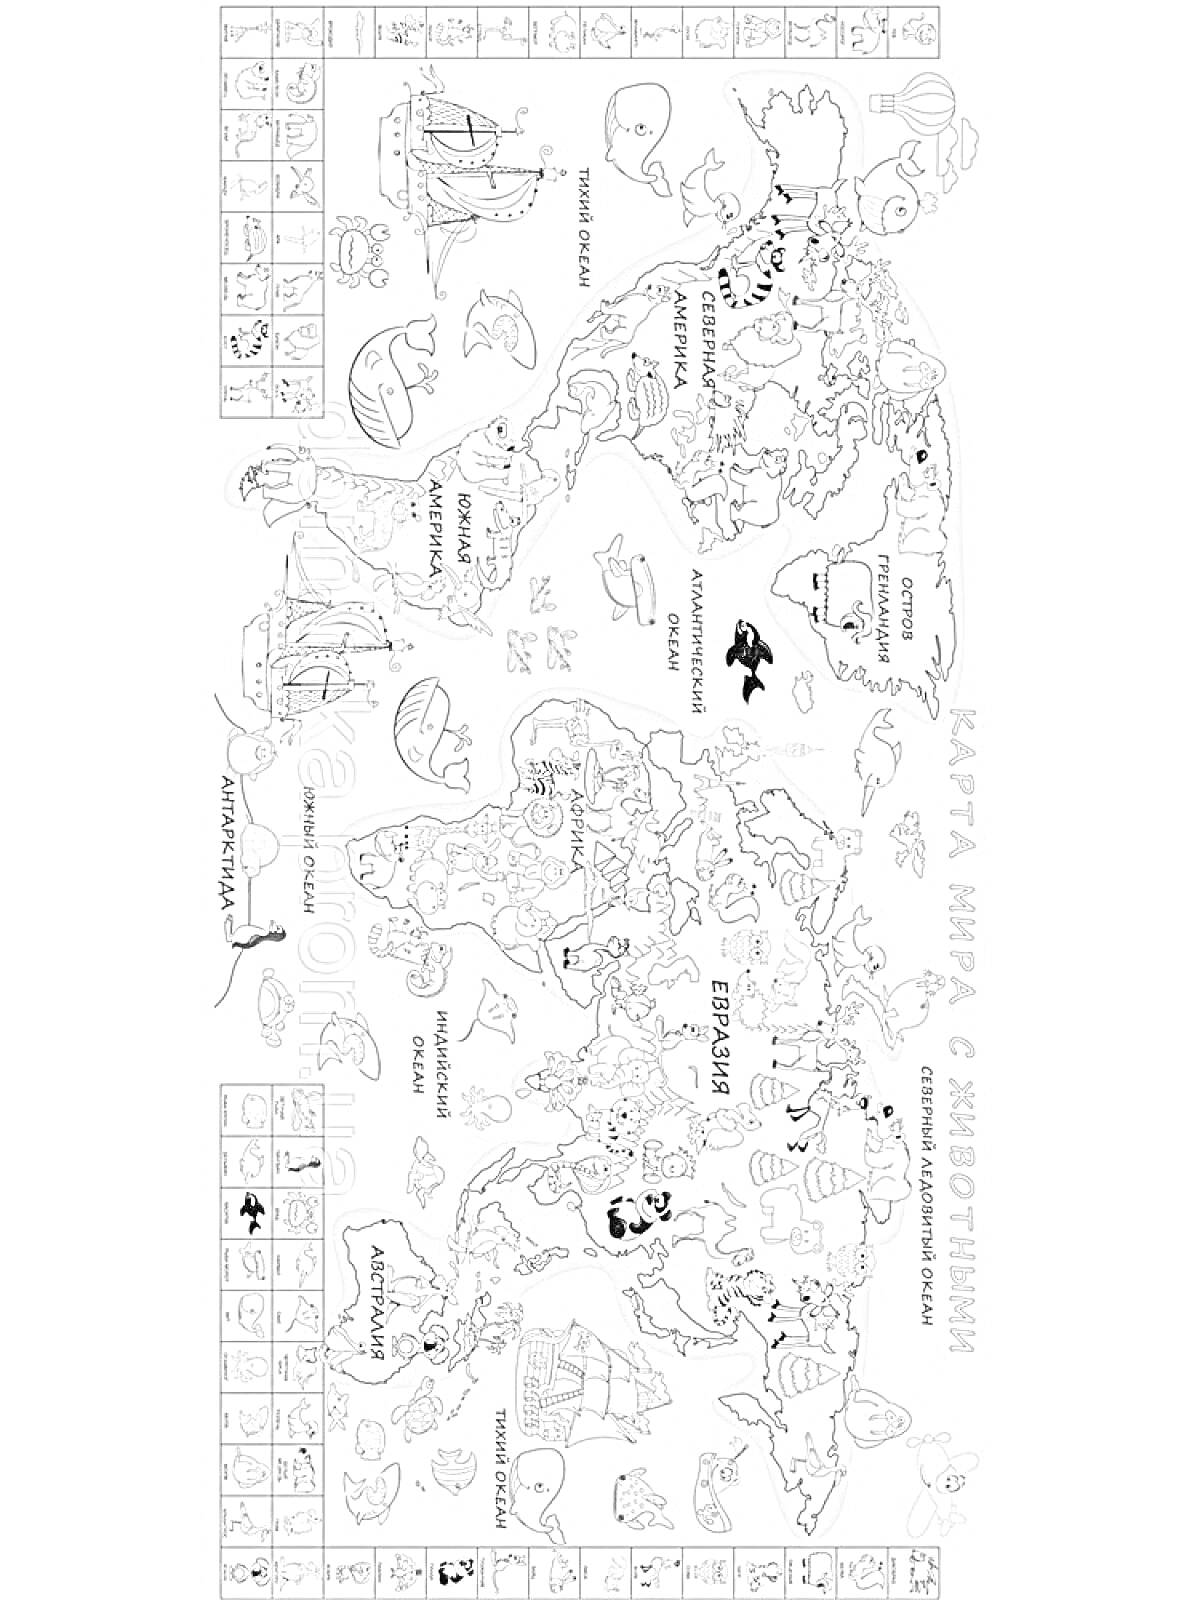 Раскраска Карта мира с животными - раскраска. Детализированная карта мира с изображением континентов, стран, океанов и различных животных, обитающих в разных регионах мира. Вокруг карты одновременно размещены дополнительные рисунки животных и морских существ.